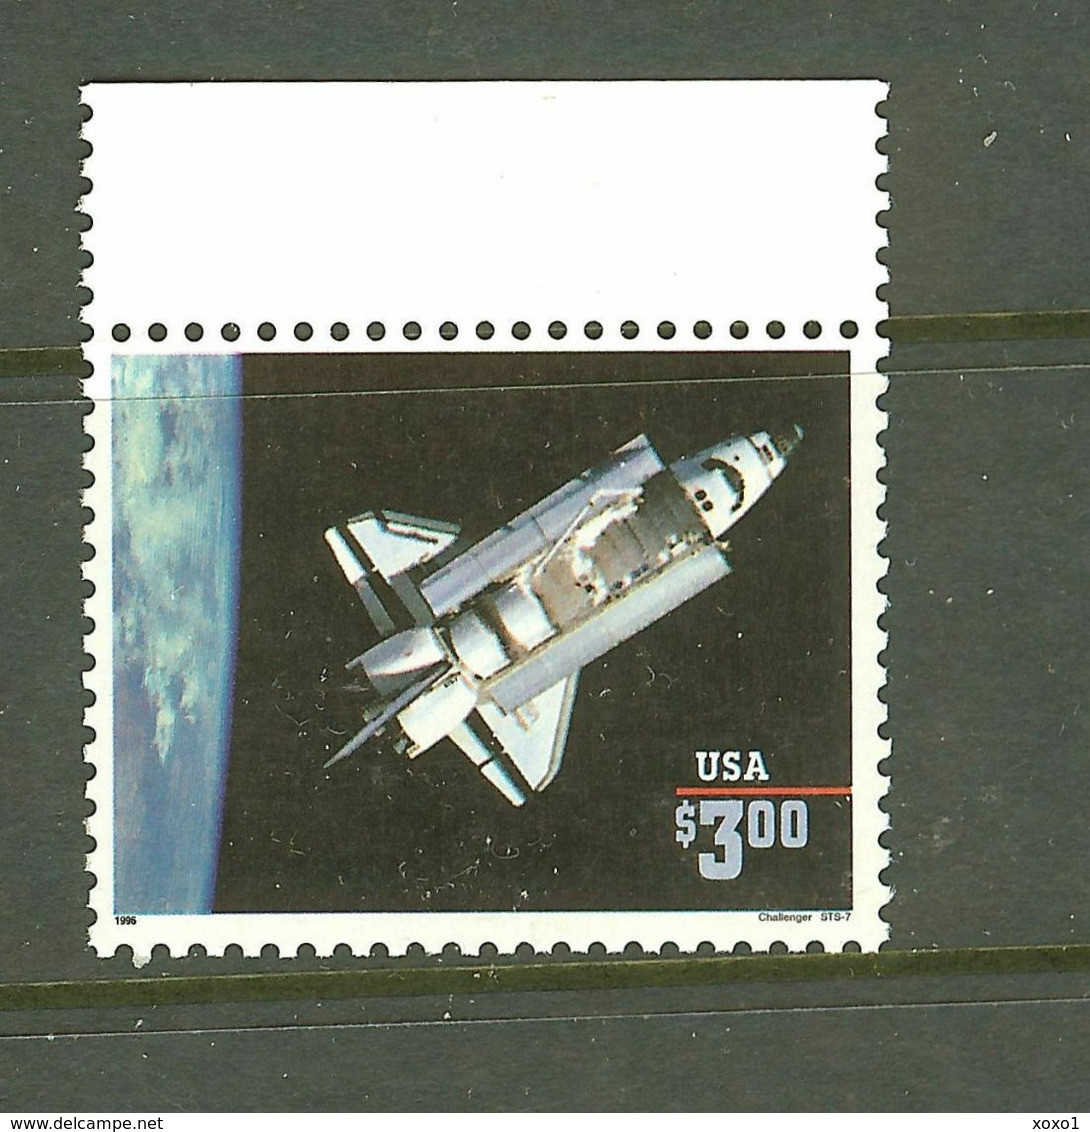 USA 1996 MiNr. 2581 II  CHALLENGER SPACE SHUTTLE 1v  MNH**  8.50 € - Verenigde Staten